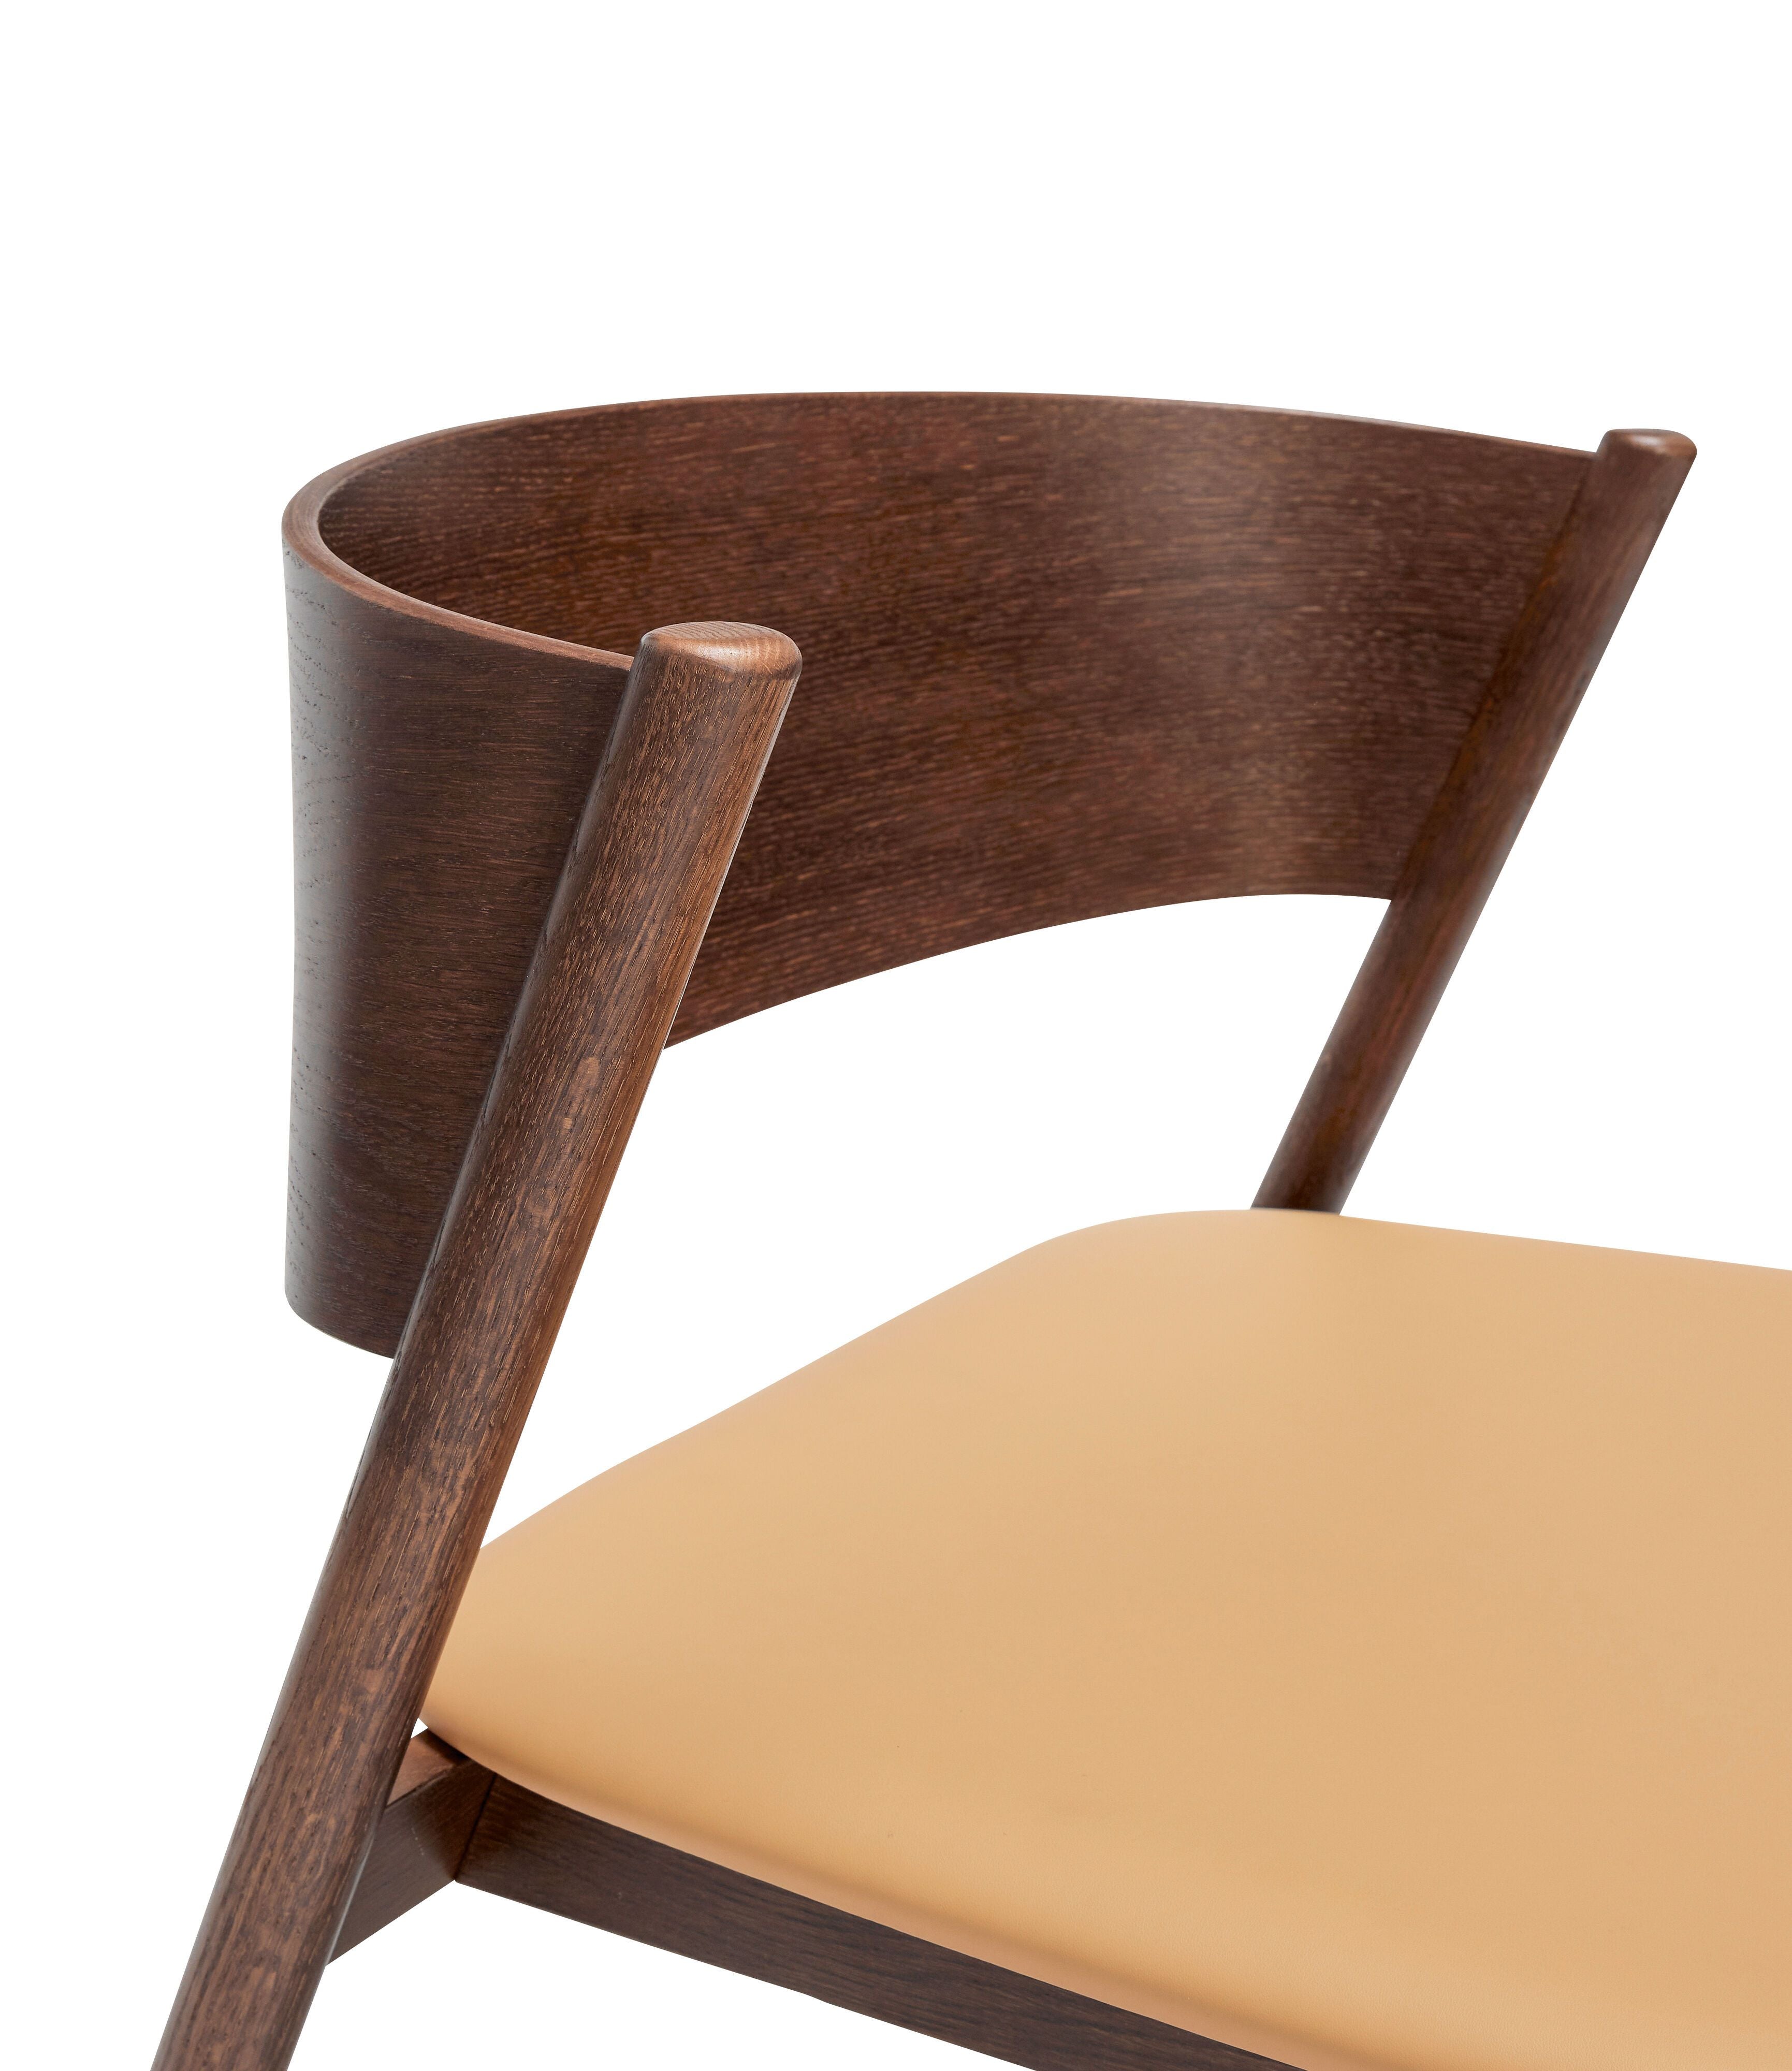 Hübsch ukośne siedzenie krzesła, ciemnobrązowy